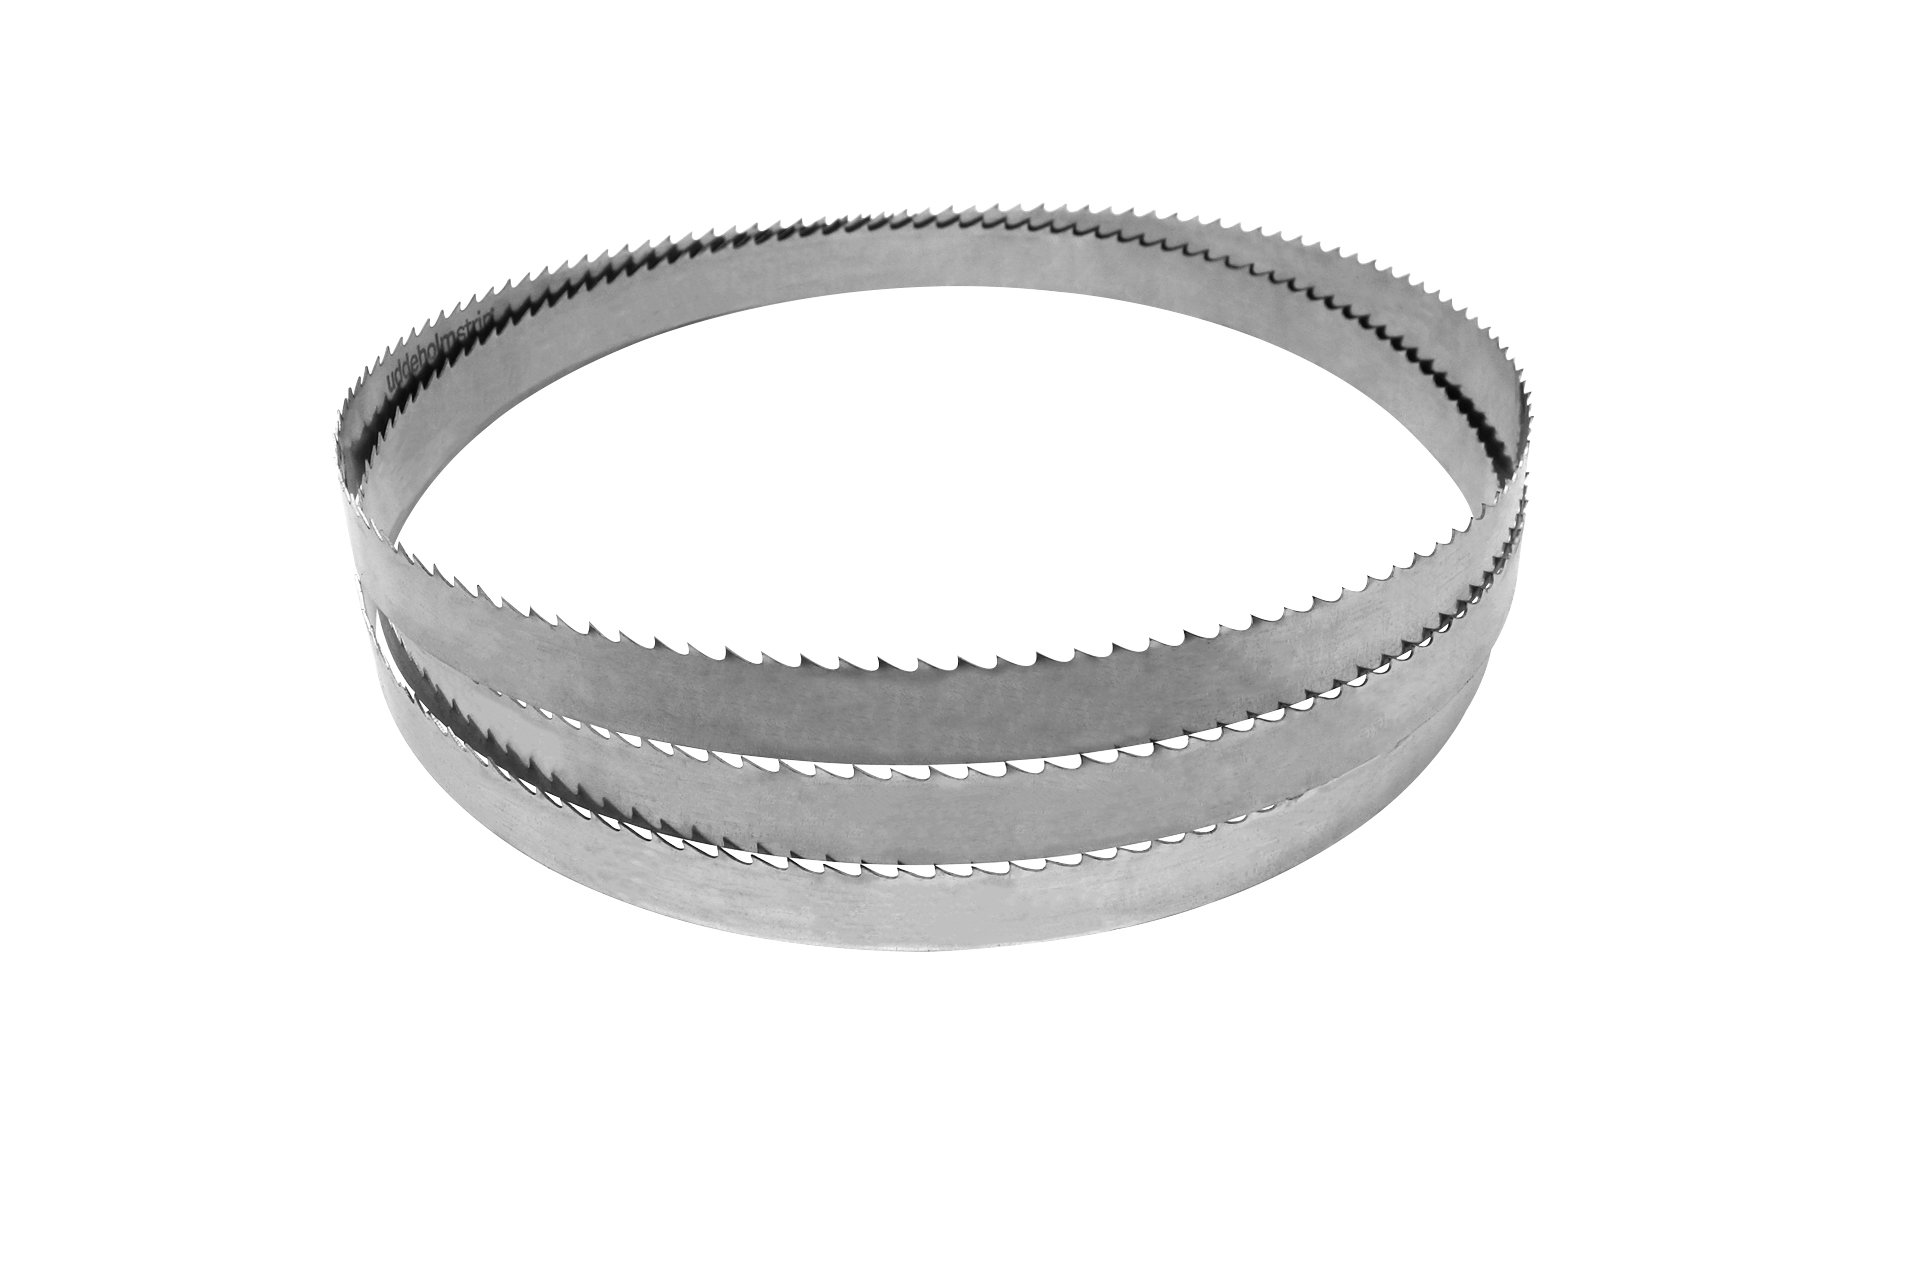 Sägeband aus Uddeholm-Stahl für MJ12, 2240 x 20 x 0,5 mm, 4 Zpz